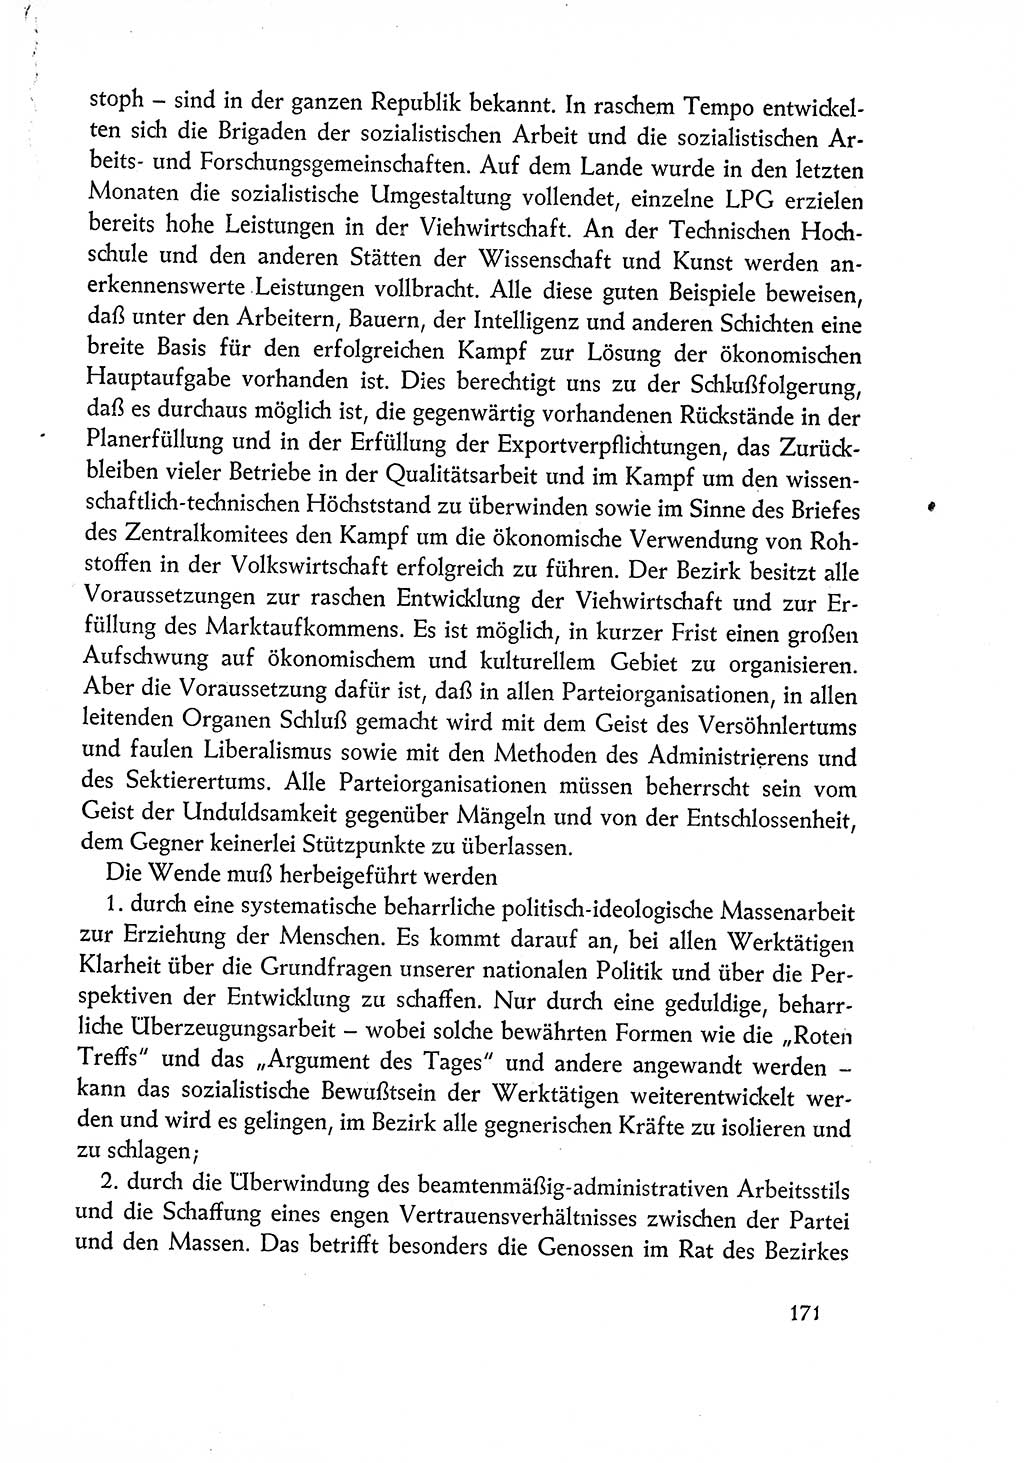 Dokumente der Sozialistischen Einheitspartei Deutschlands (SED) [Deutsche Demokratische Republik (DDR)] 1960-1961, Seite 171 (Dok. SED DDR 1960-1961, S. 171)